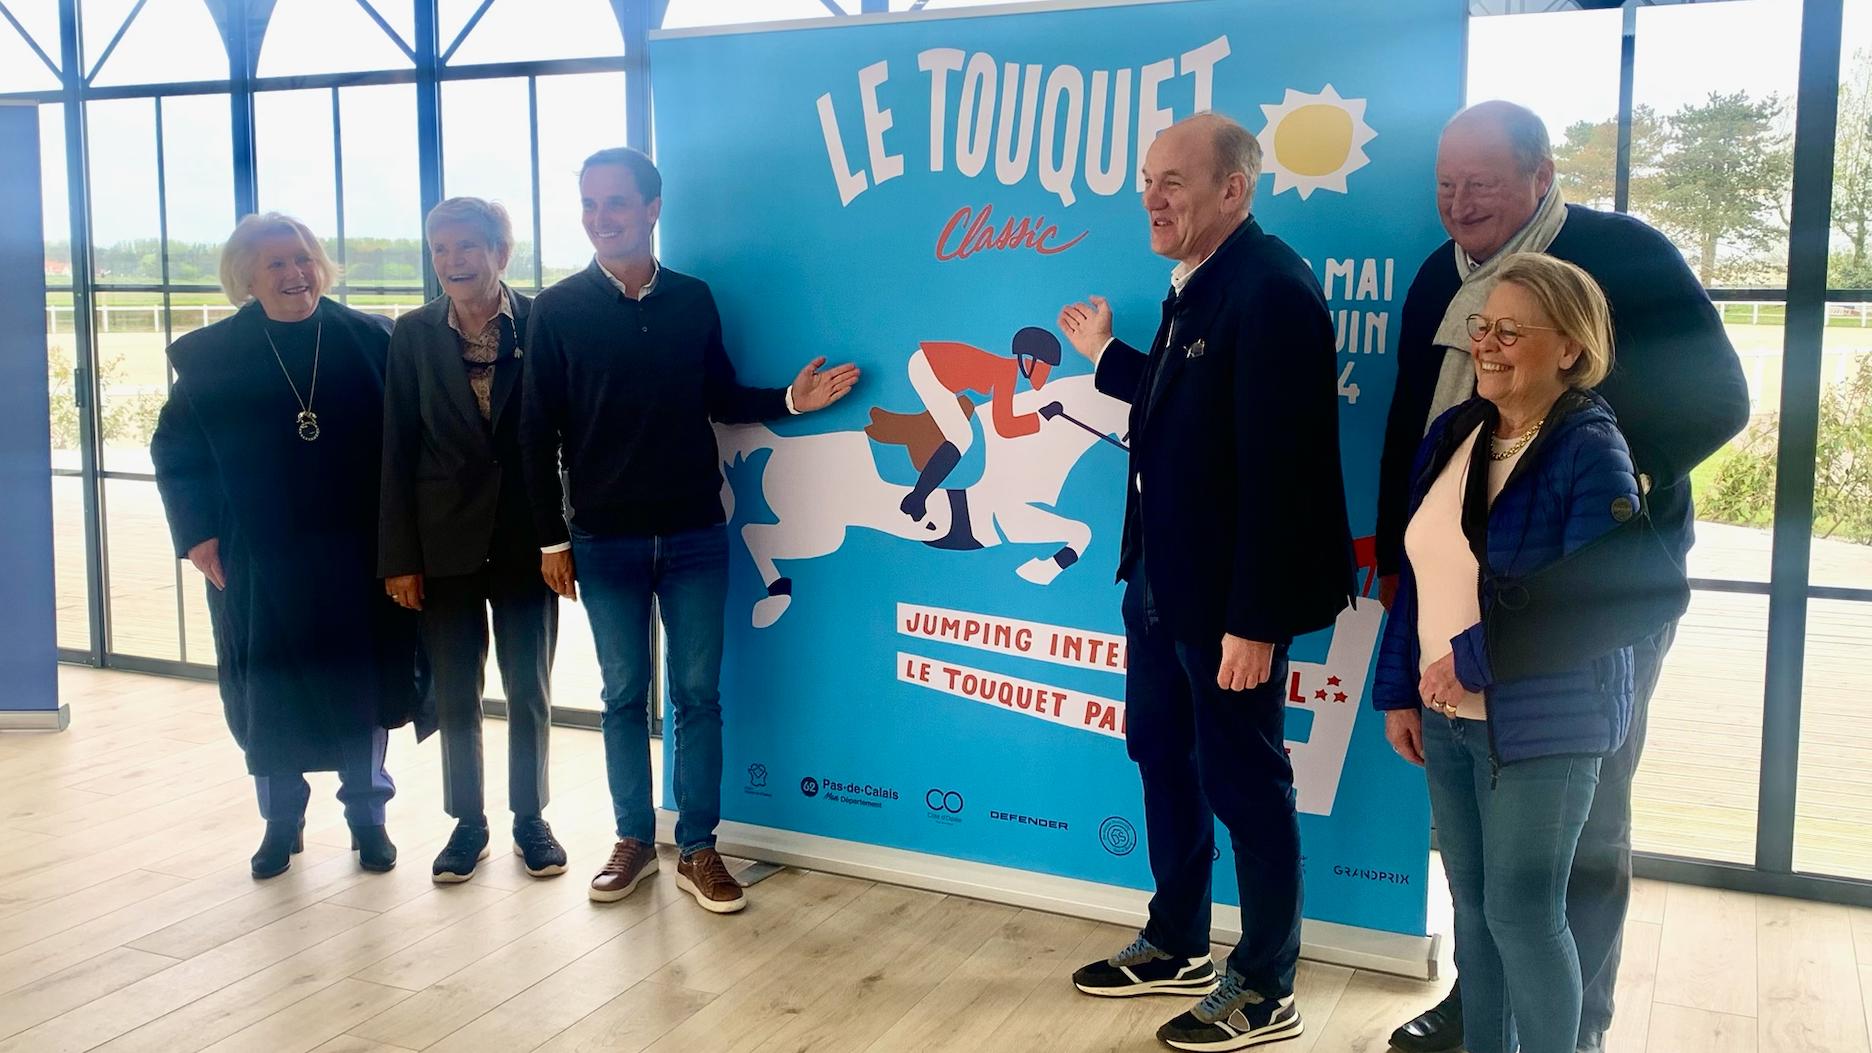 Les principaux acteurs du Touquet Classic, fruit d’une collaboration nouvelle entre la Ville du Touquet, les collectivités locales et GRANDPRIX Events, étaient réunis pour une conférence de presse vendredi dernier.